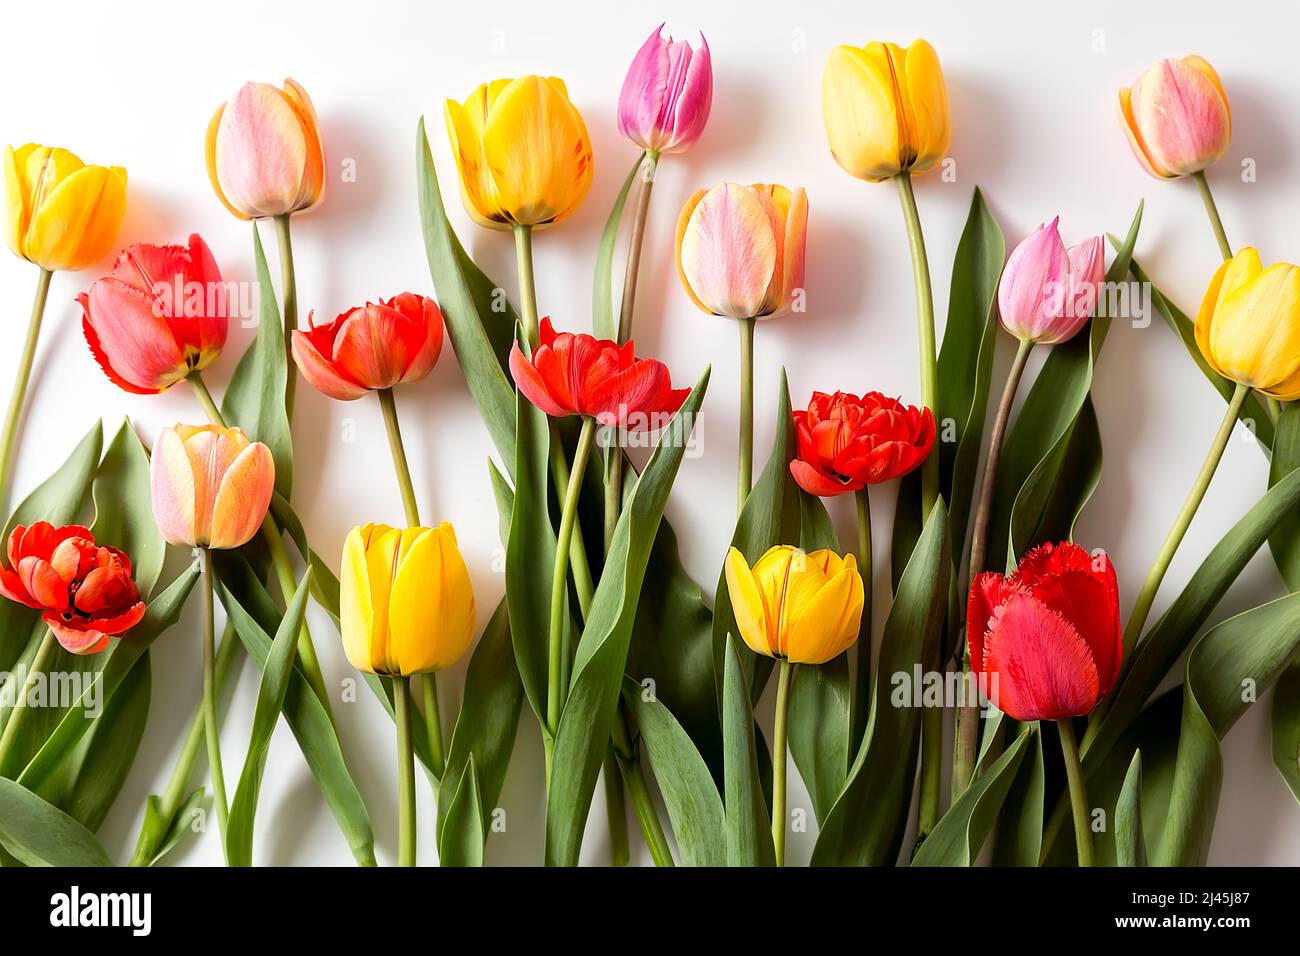 Un bouquet de tulipes de différentes couleurs sur fond blanc. Un endroit prêt pour votre texte d'invitation, Félicitations. Banque D'Images